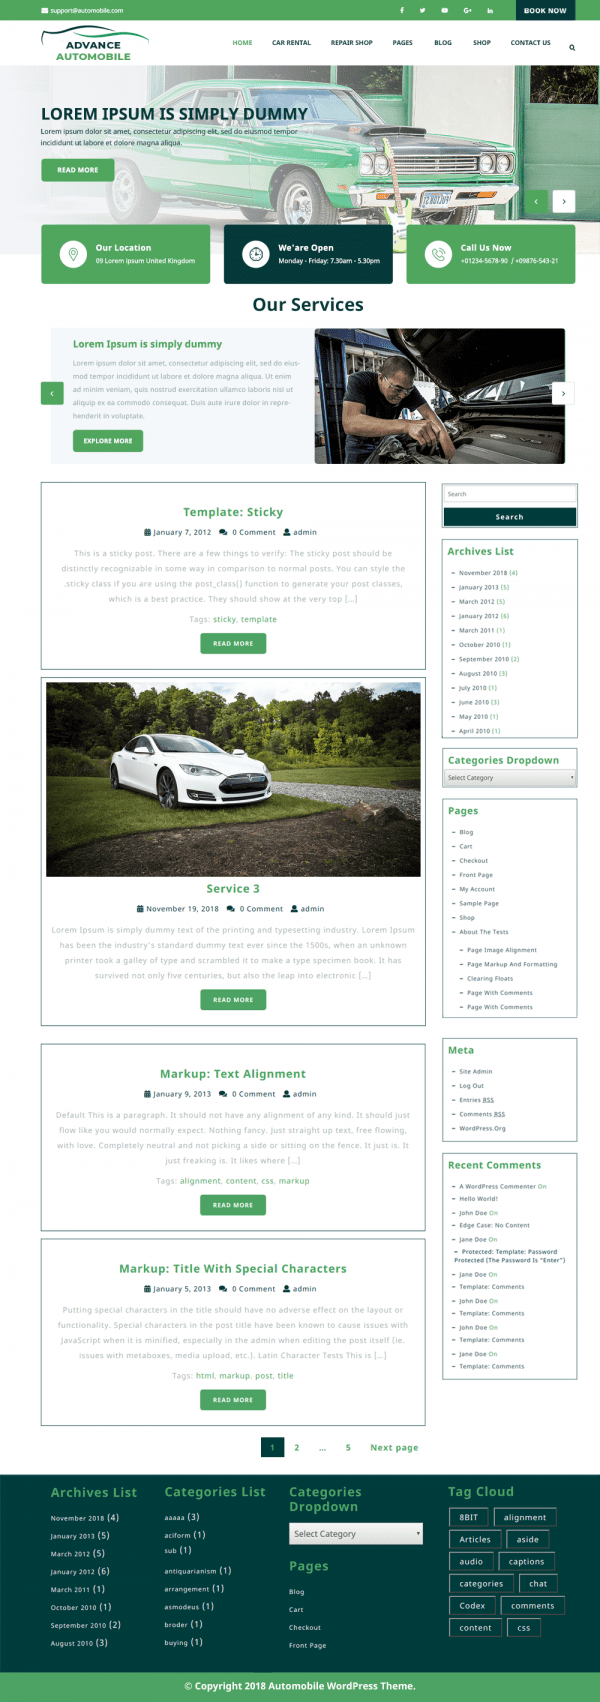 Free Automobile WordPress Theme